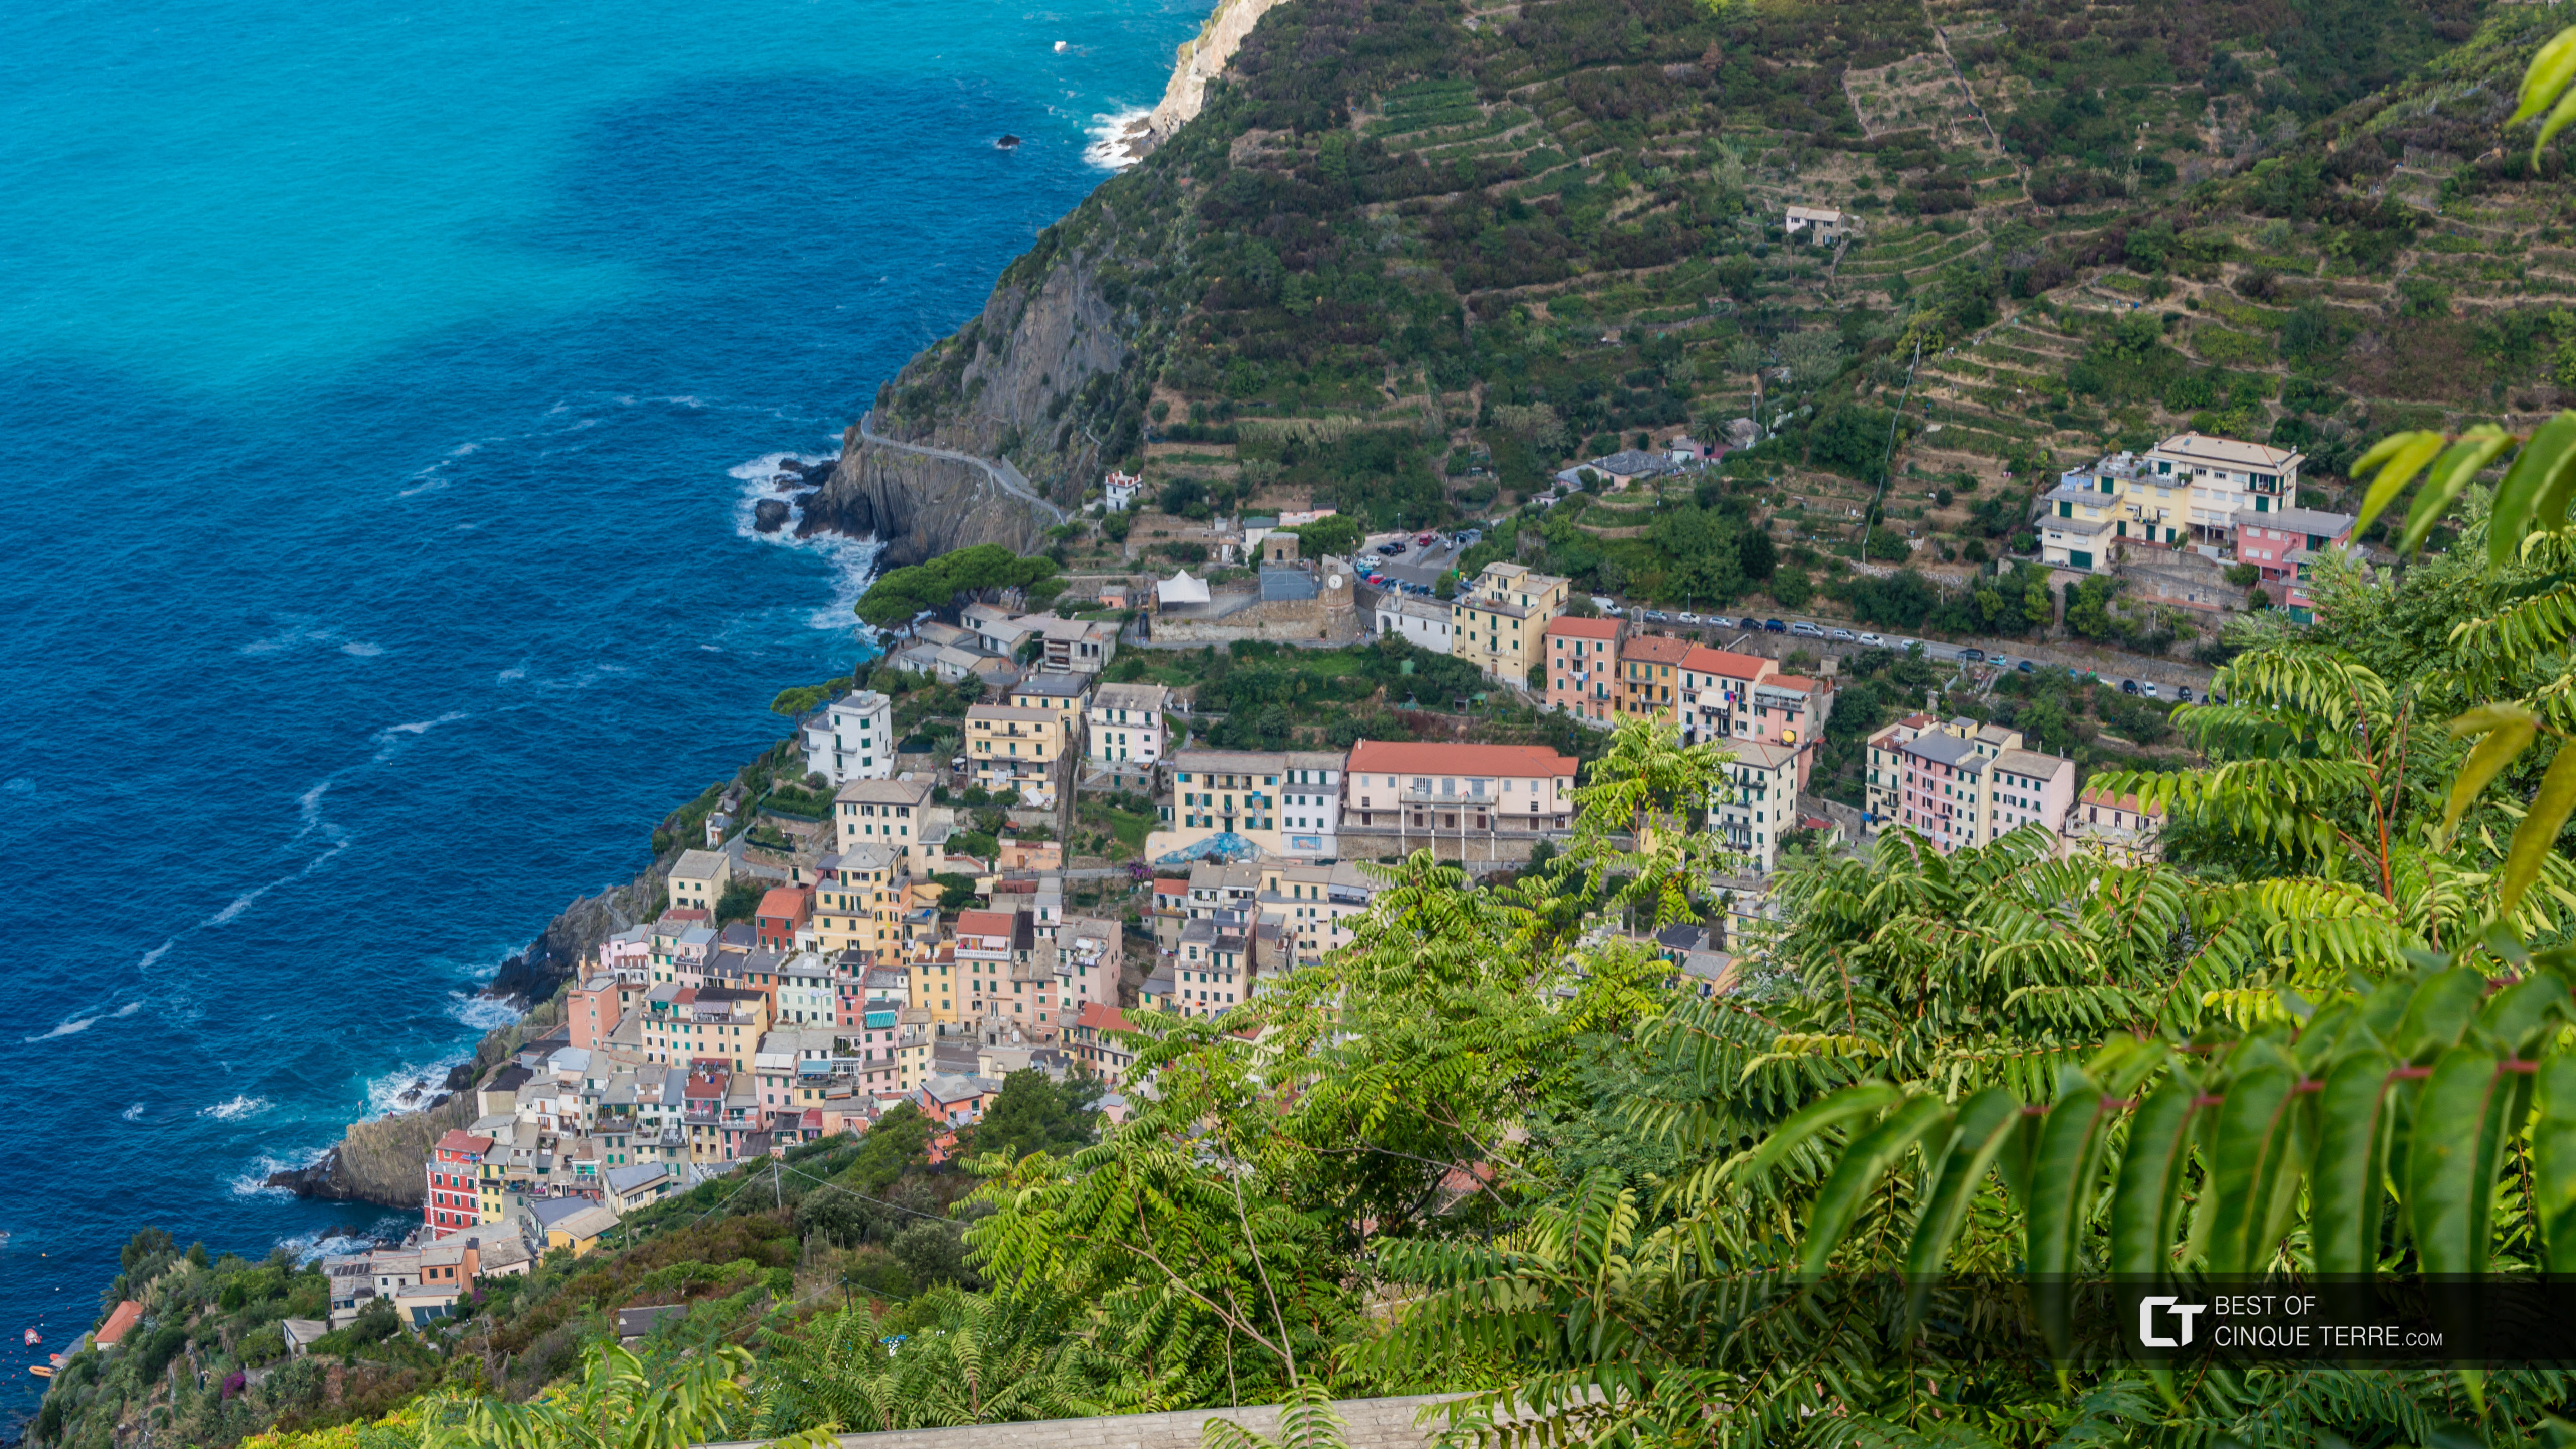 Vista da vila pela trilha que leva ao Santuário de Montenero, Riomaggiore, Cinque Terre, Itália